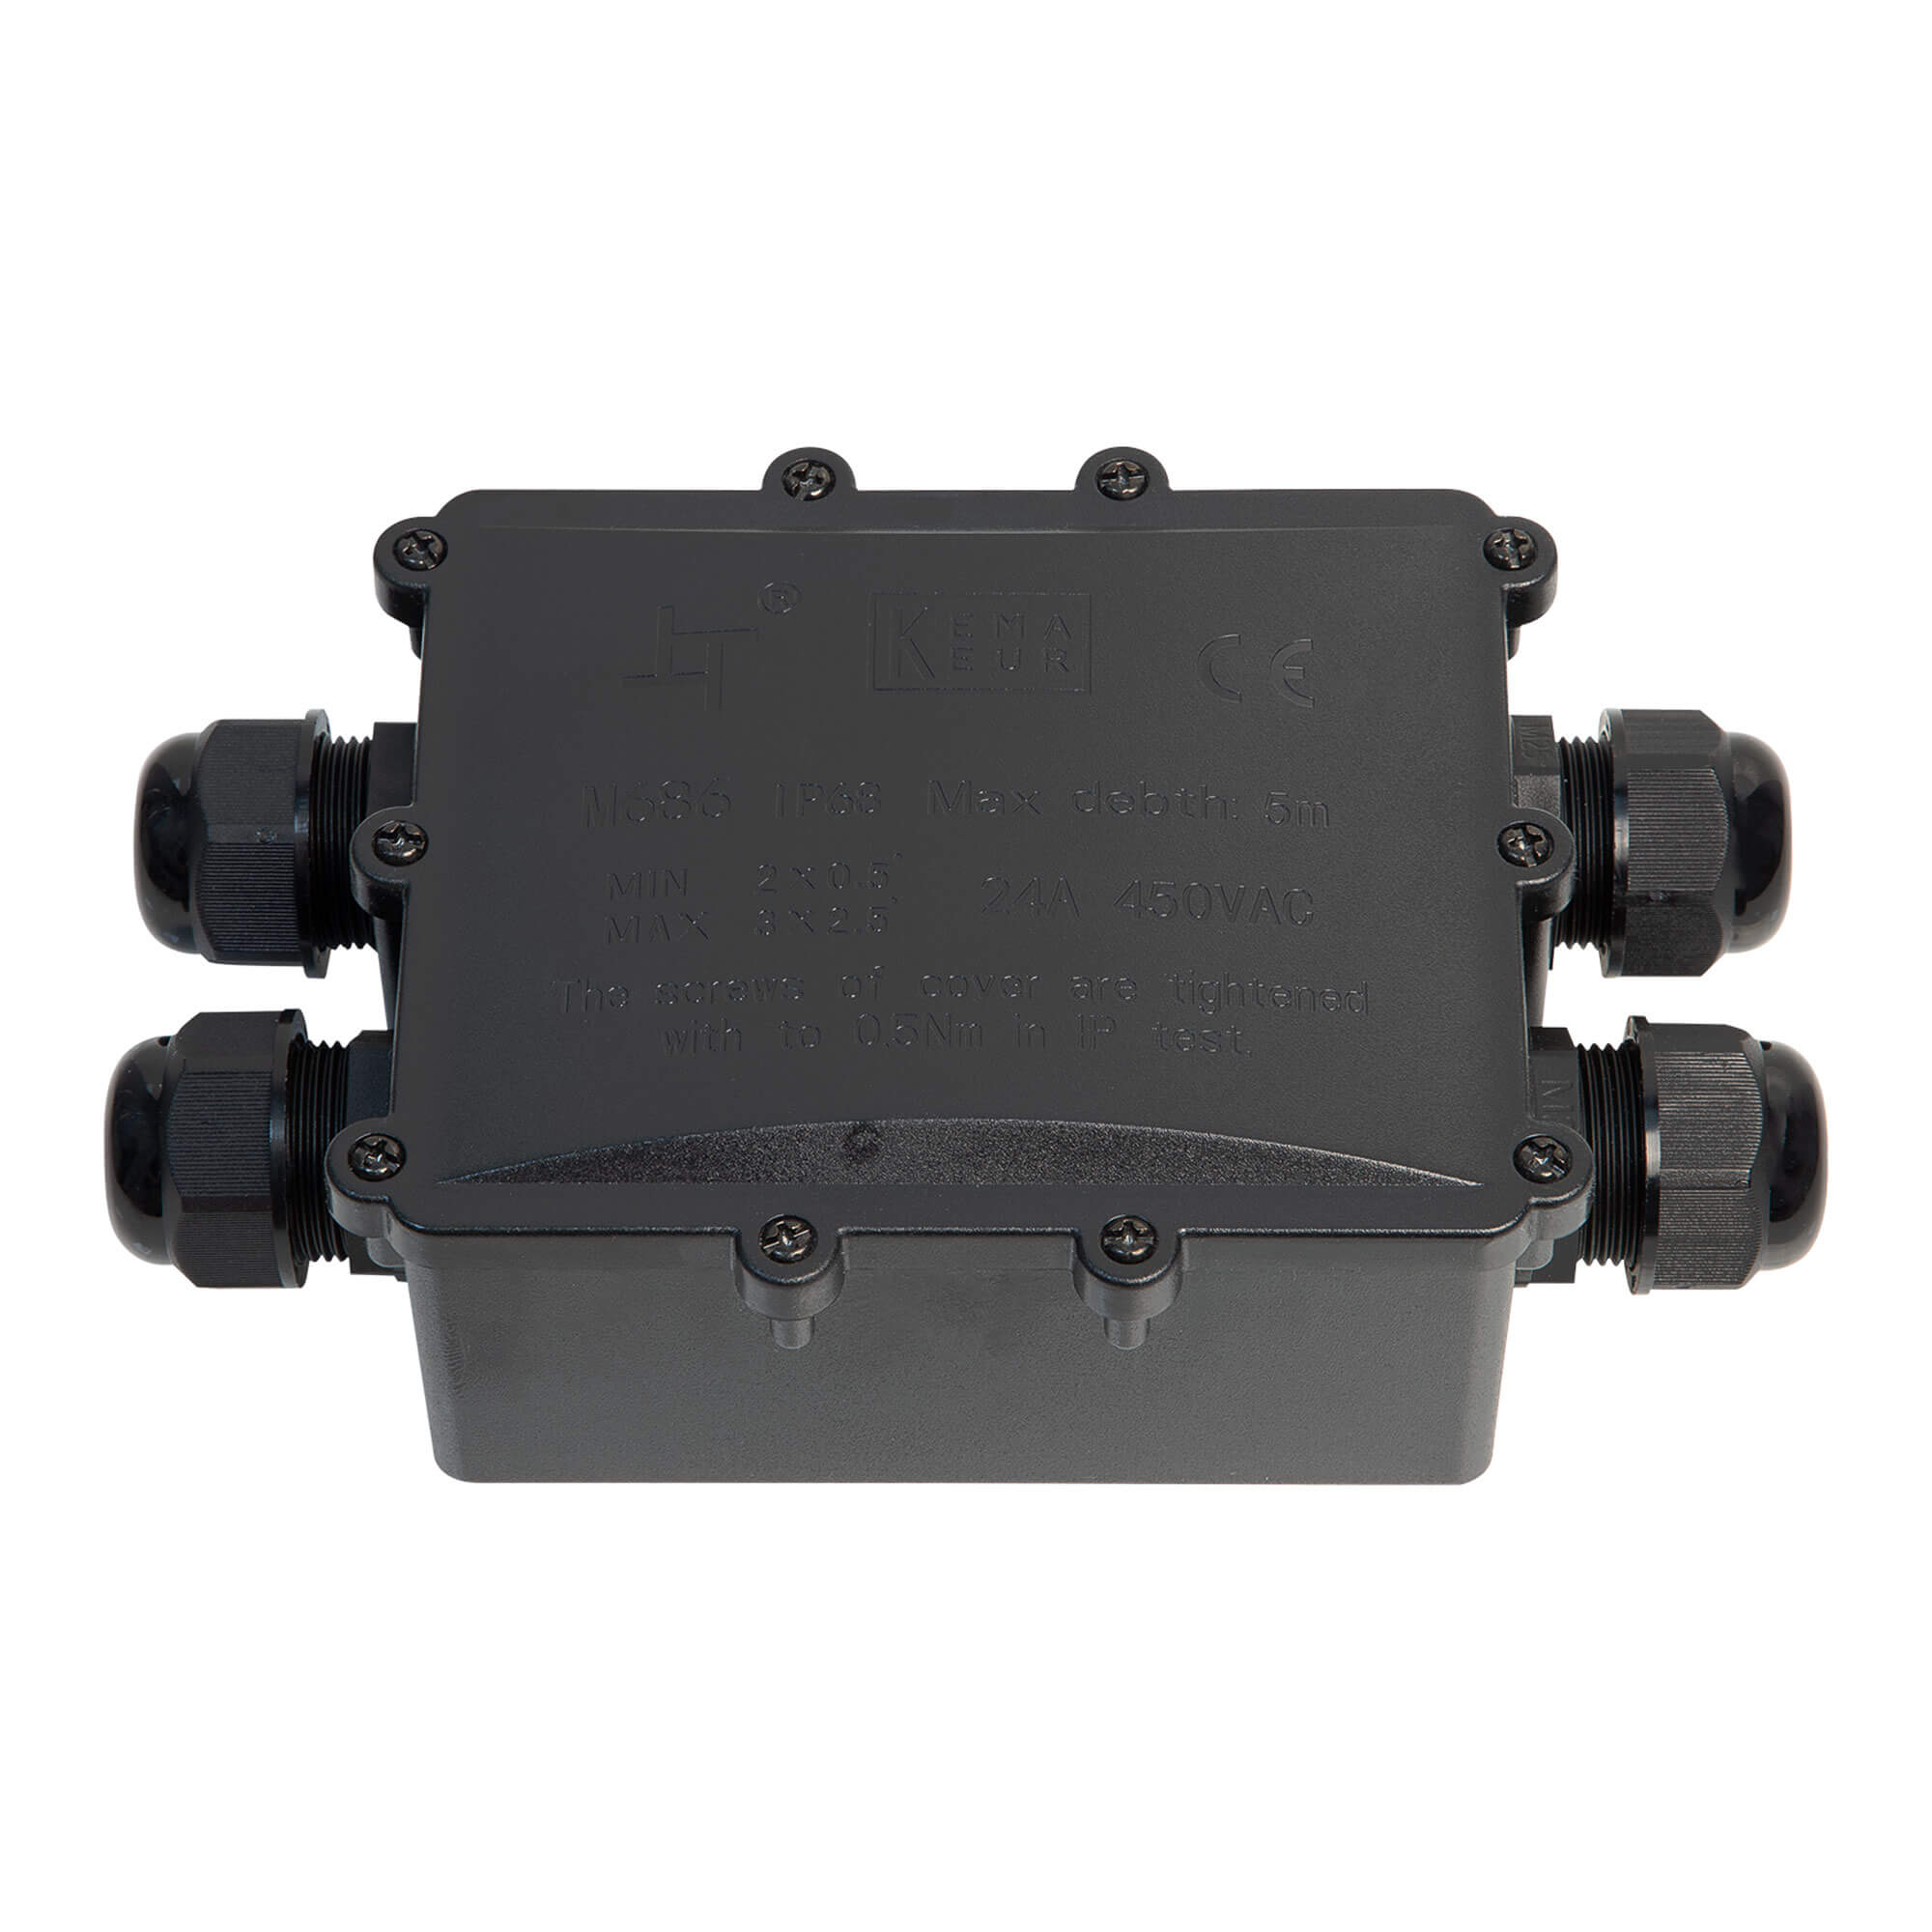 Boîte étanche - IP68 - Large - 4 voies - pour câble de 4 à 14mm